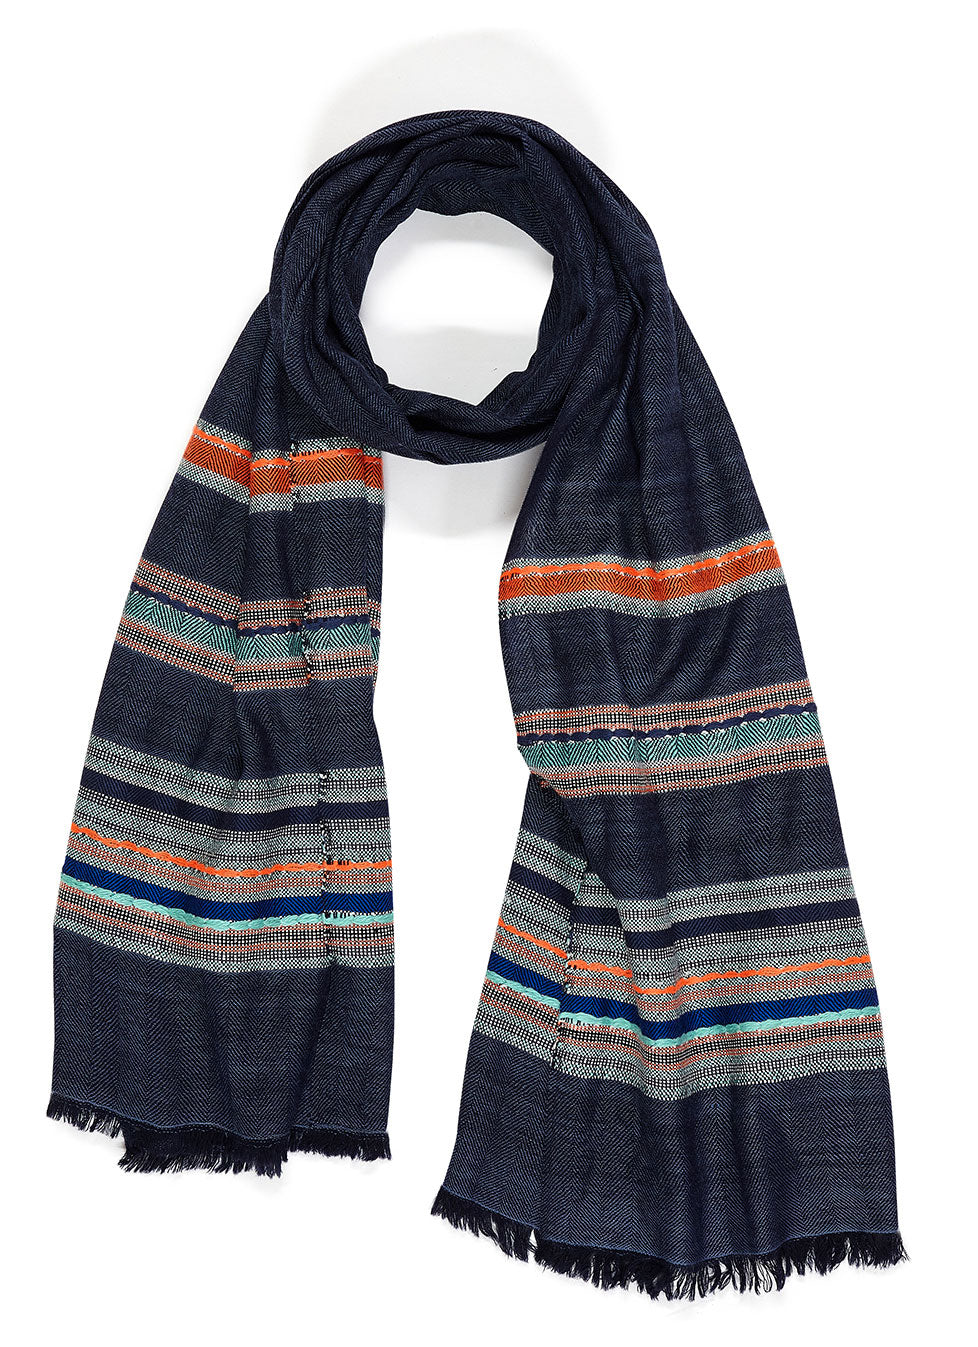 Tørklæde - Pashmina uld - Blåt med orange/lyseblå